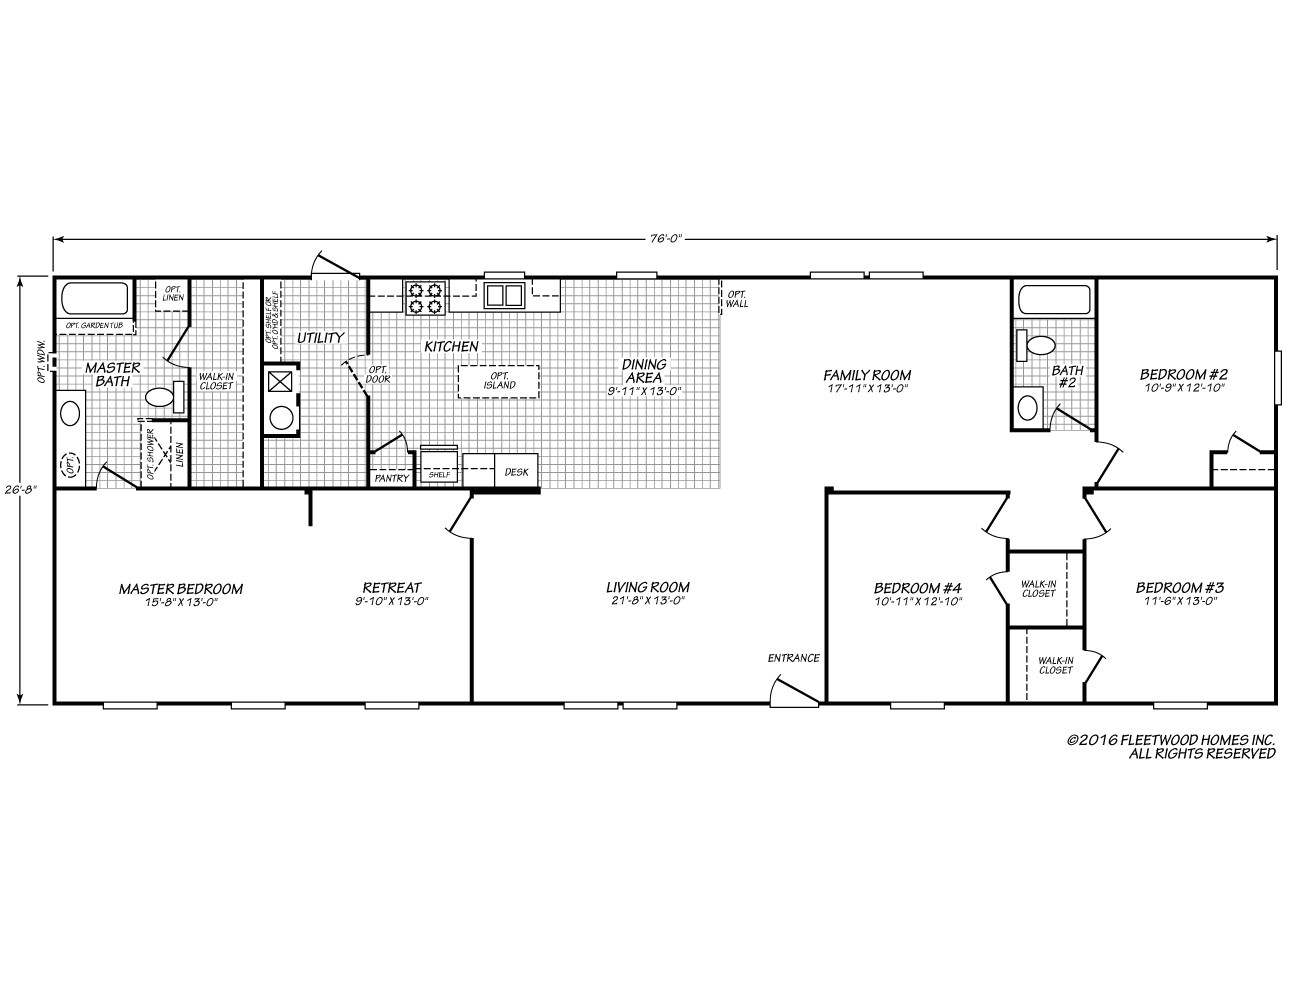 1998 fleetwood mobile home floor plans